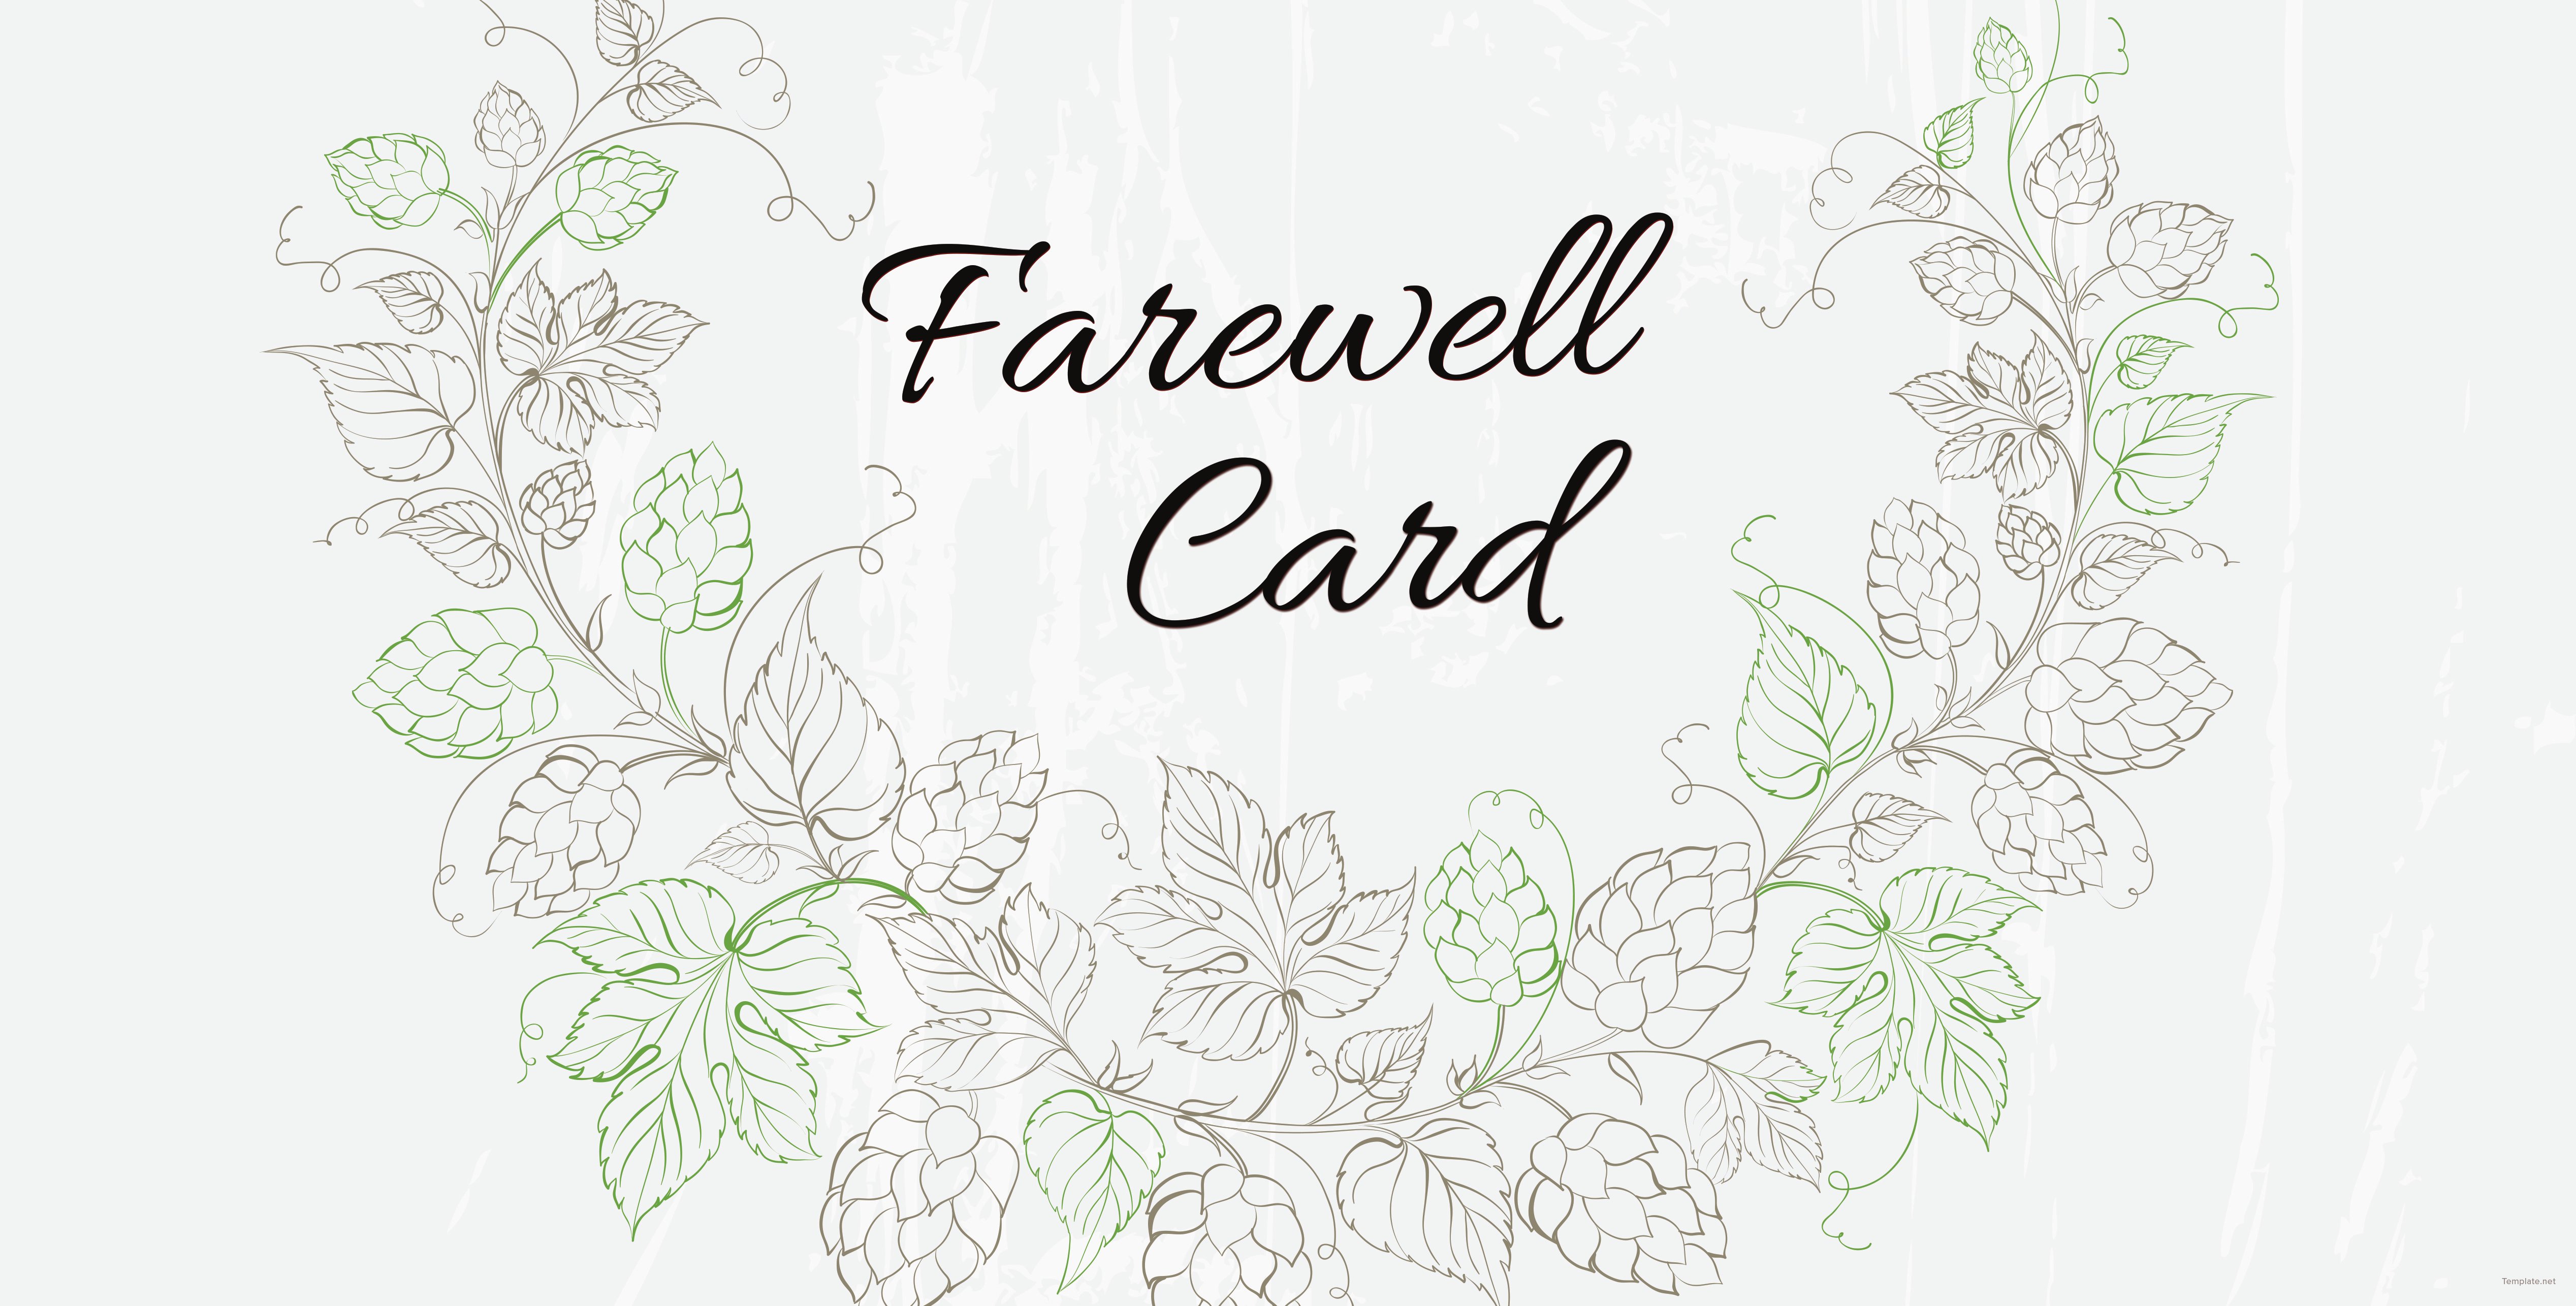 editable-farewell-card-template